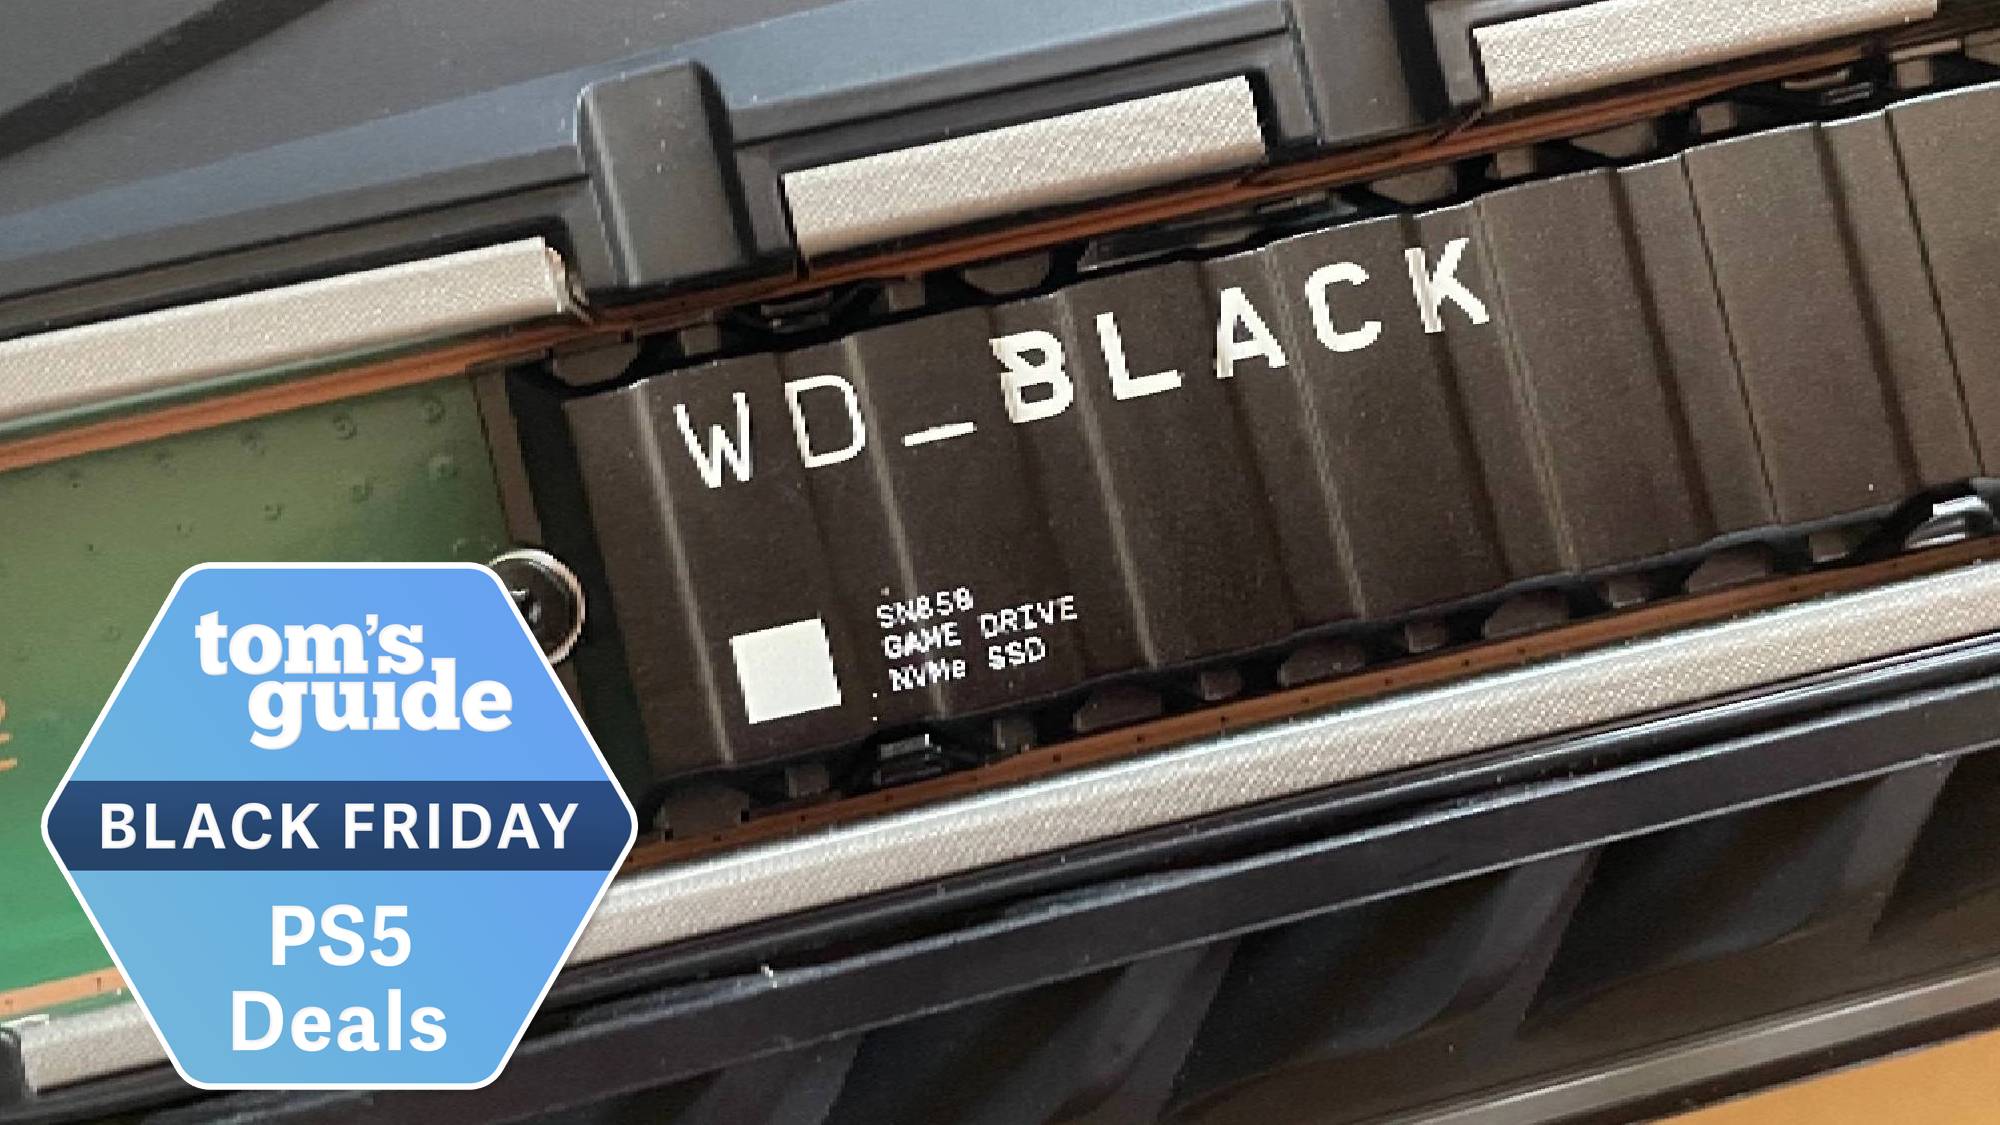 Black Friday : idéal pour la PS5, le SSD 990 Pro 2 To est à son prix le  plus bas - Numerama